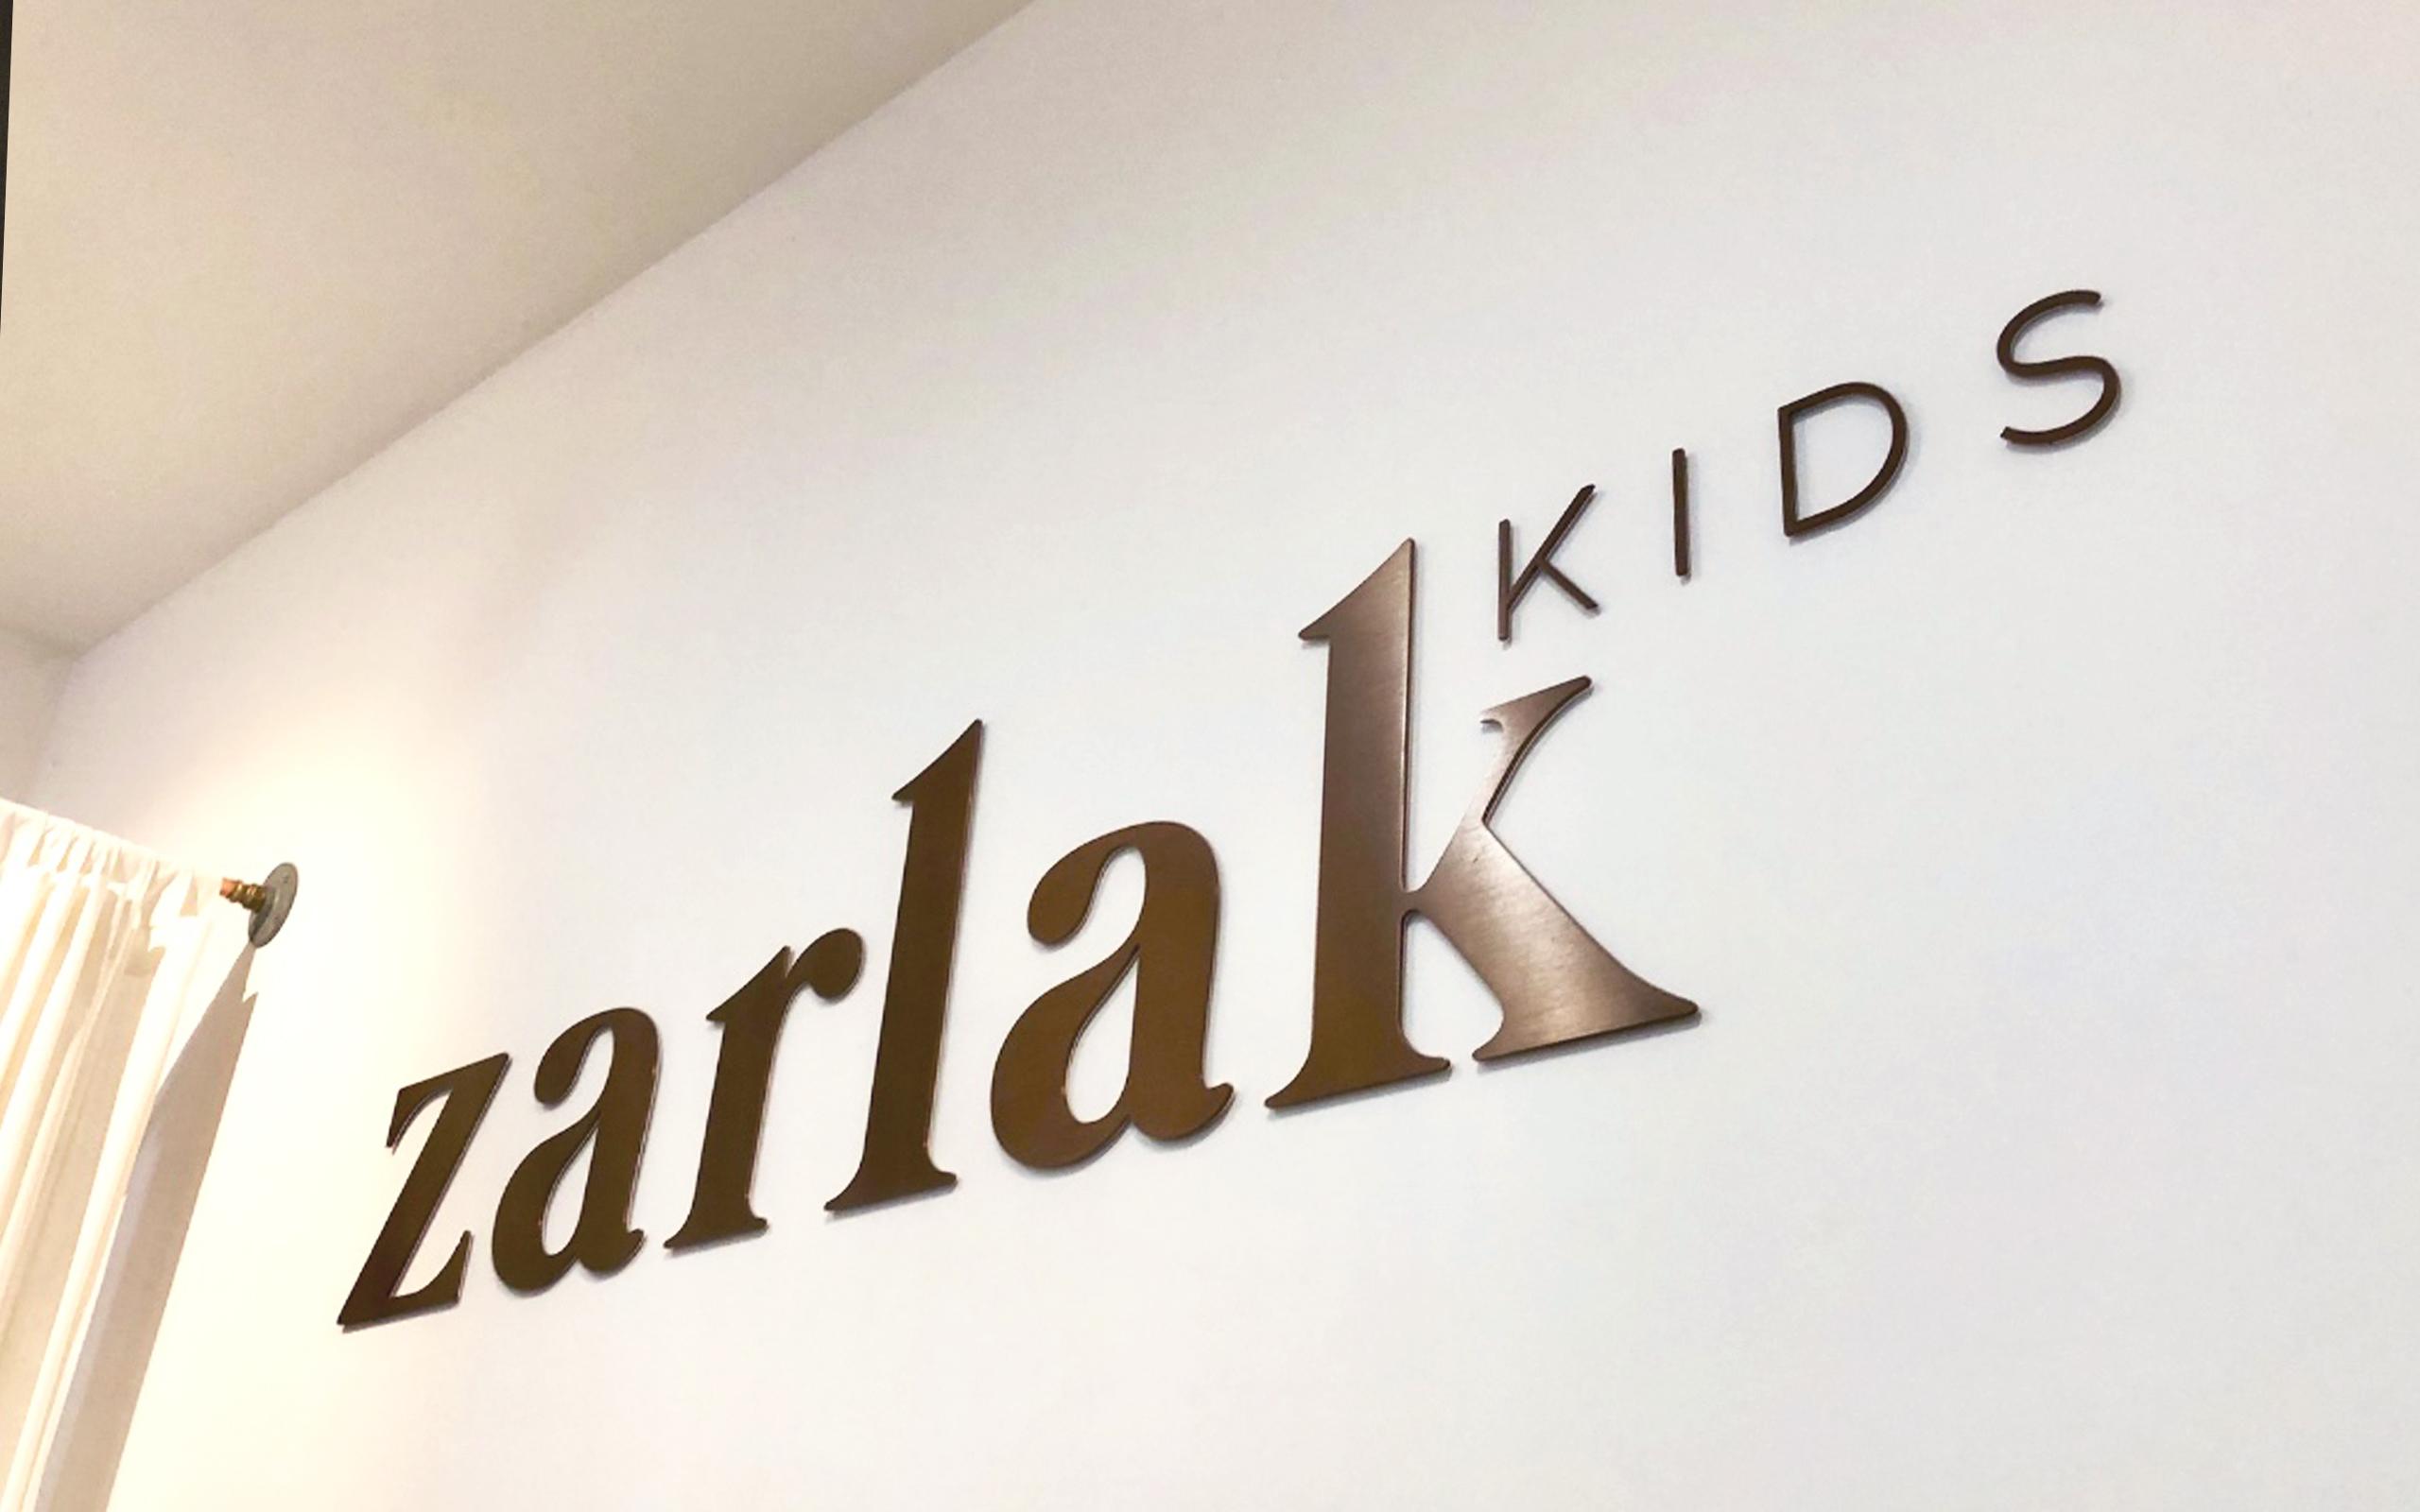 zarlak-kids-feature-wall-signage